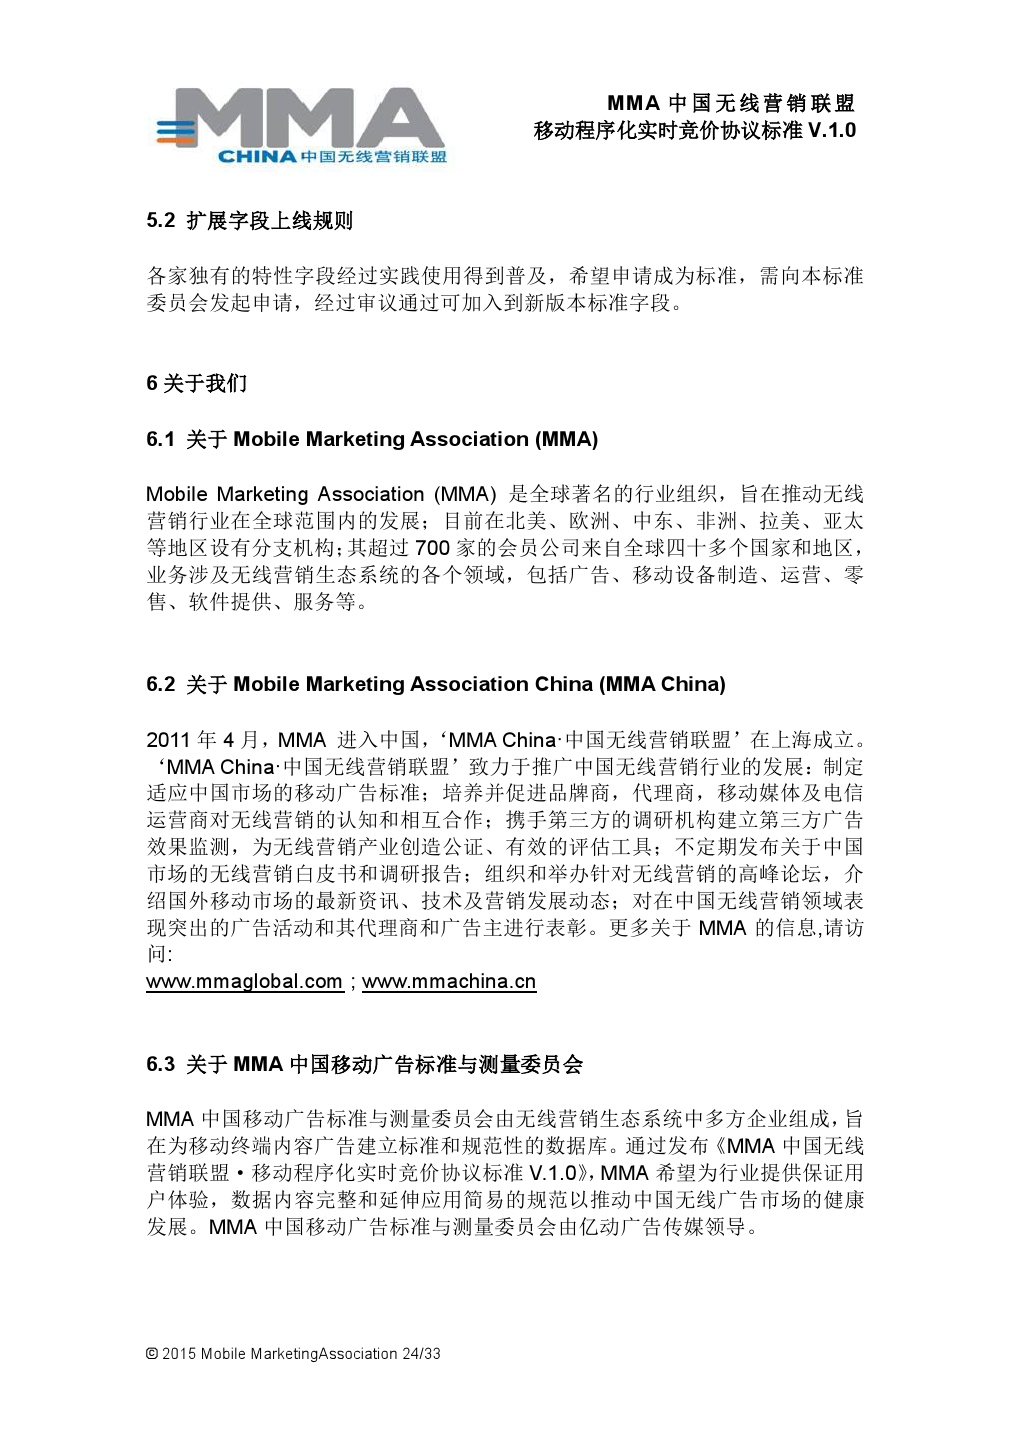 MMA中国无线营销联盟移动程序化实时竞价协议标准V.1.0_000025